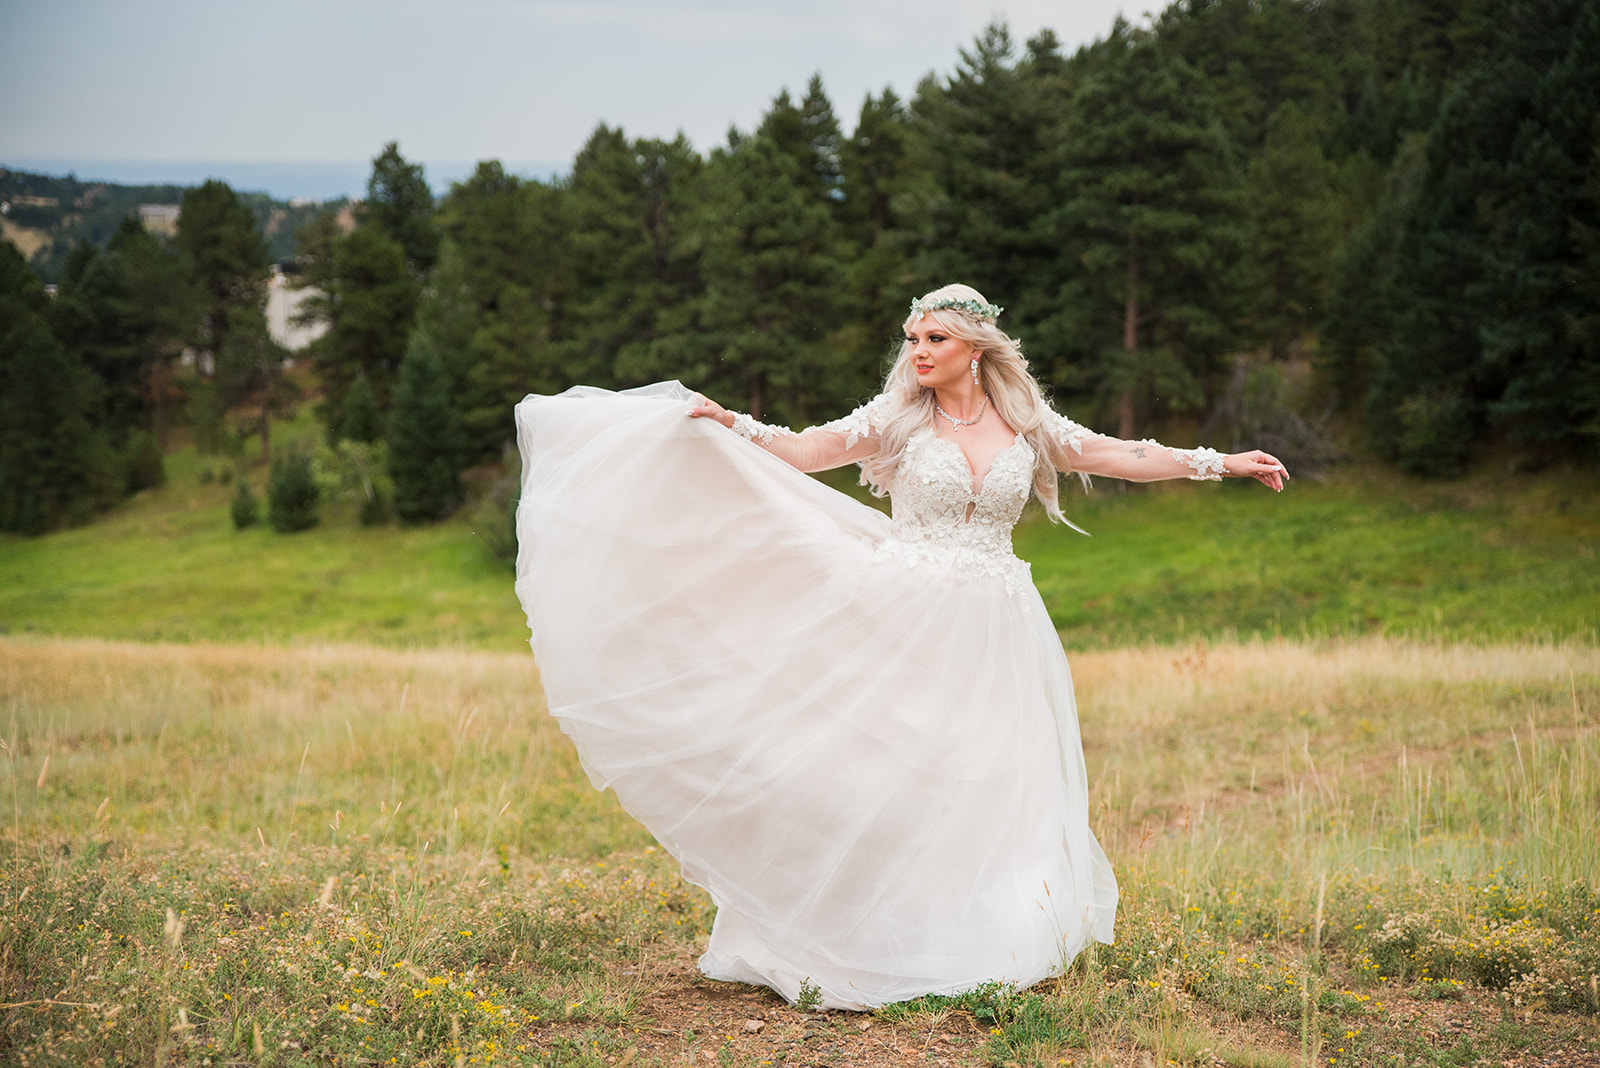 Bride twirls in an open field, showing off her dress.